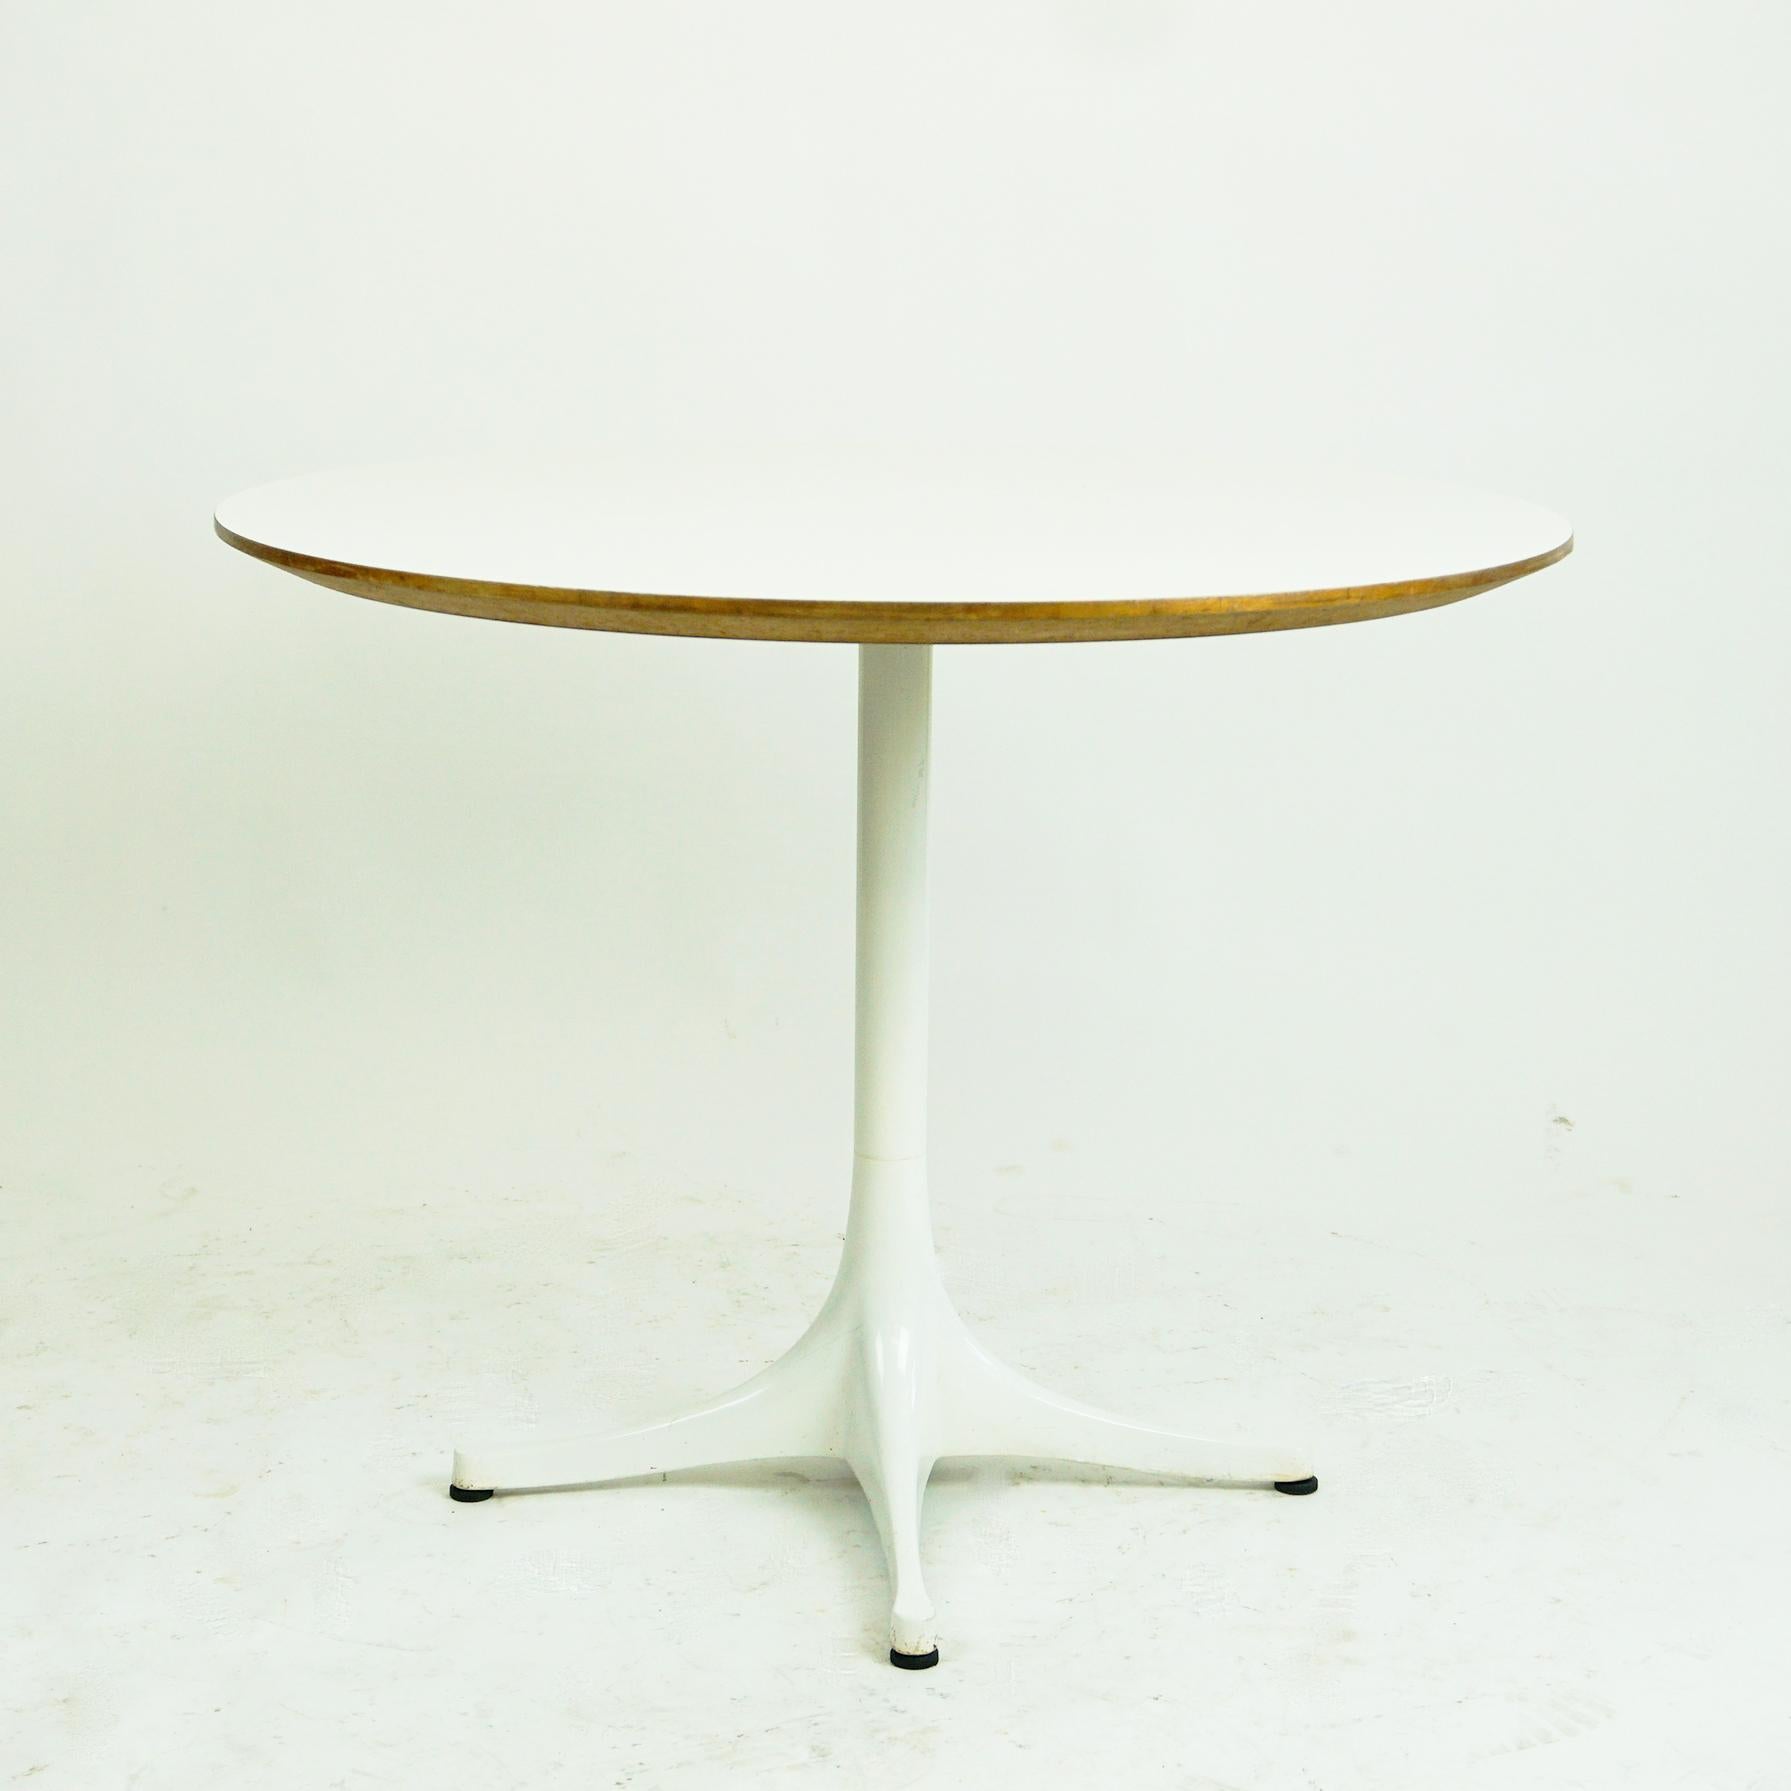 Cette iconique table basse ou table d'appoint circulaire blanche 5452 a été conçue par George Nelson et fabriquée par Herman Miller, États-Unis, années 1960.
Il présente un plateau en stratifié blanc et un socle en acier émaillé. 
Il s'agit d'une